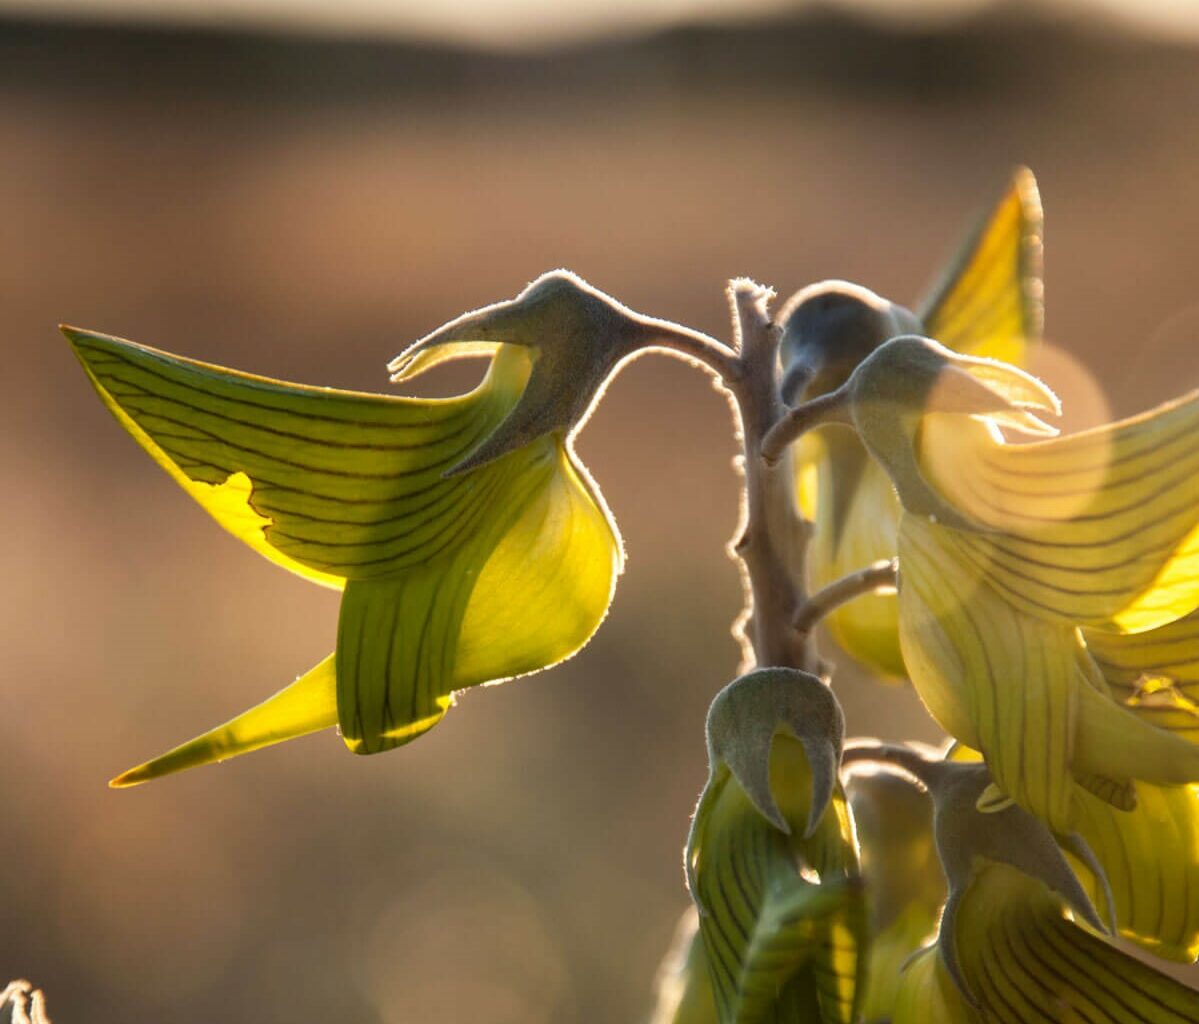 La peculiar forma de esta planta esconde una flor de colibrí